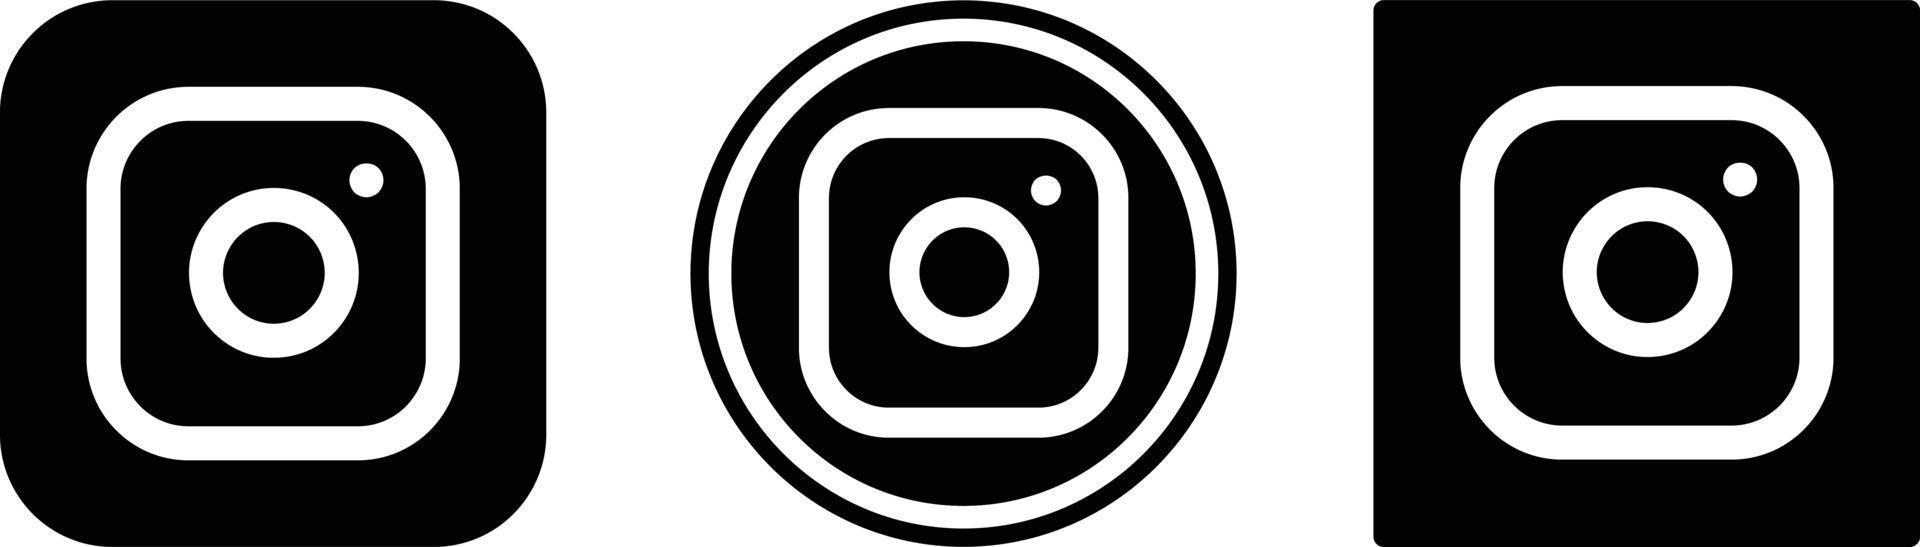 Instagram-Symbol. Web-Icon-Set. Sammlung von Symbolen. einfache Vektorillustration. vektor